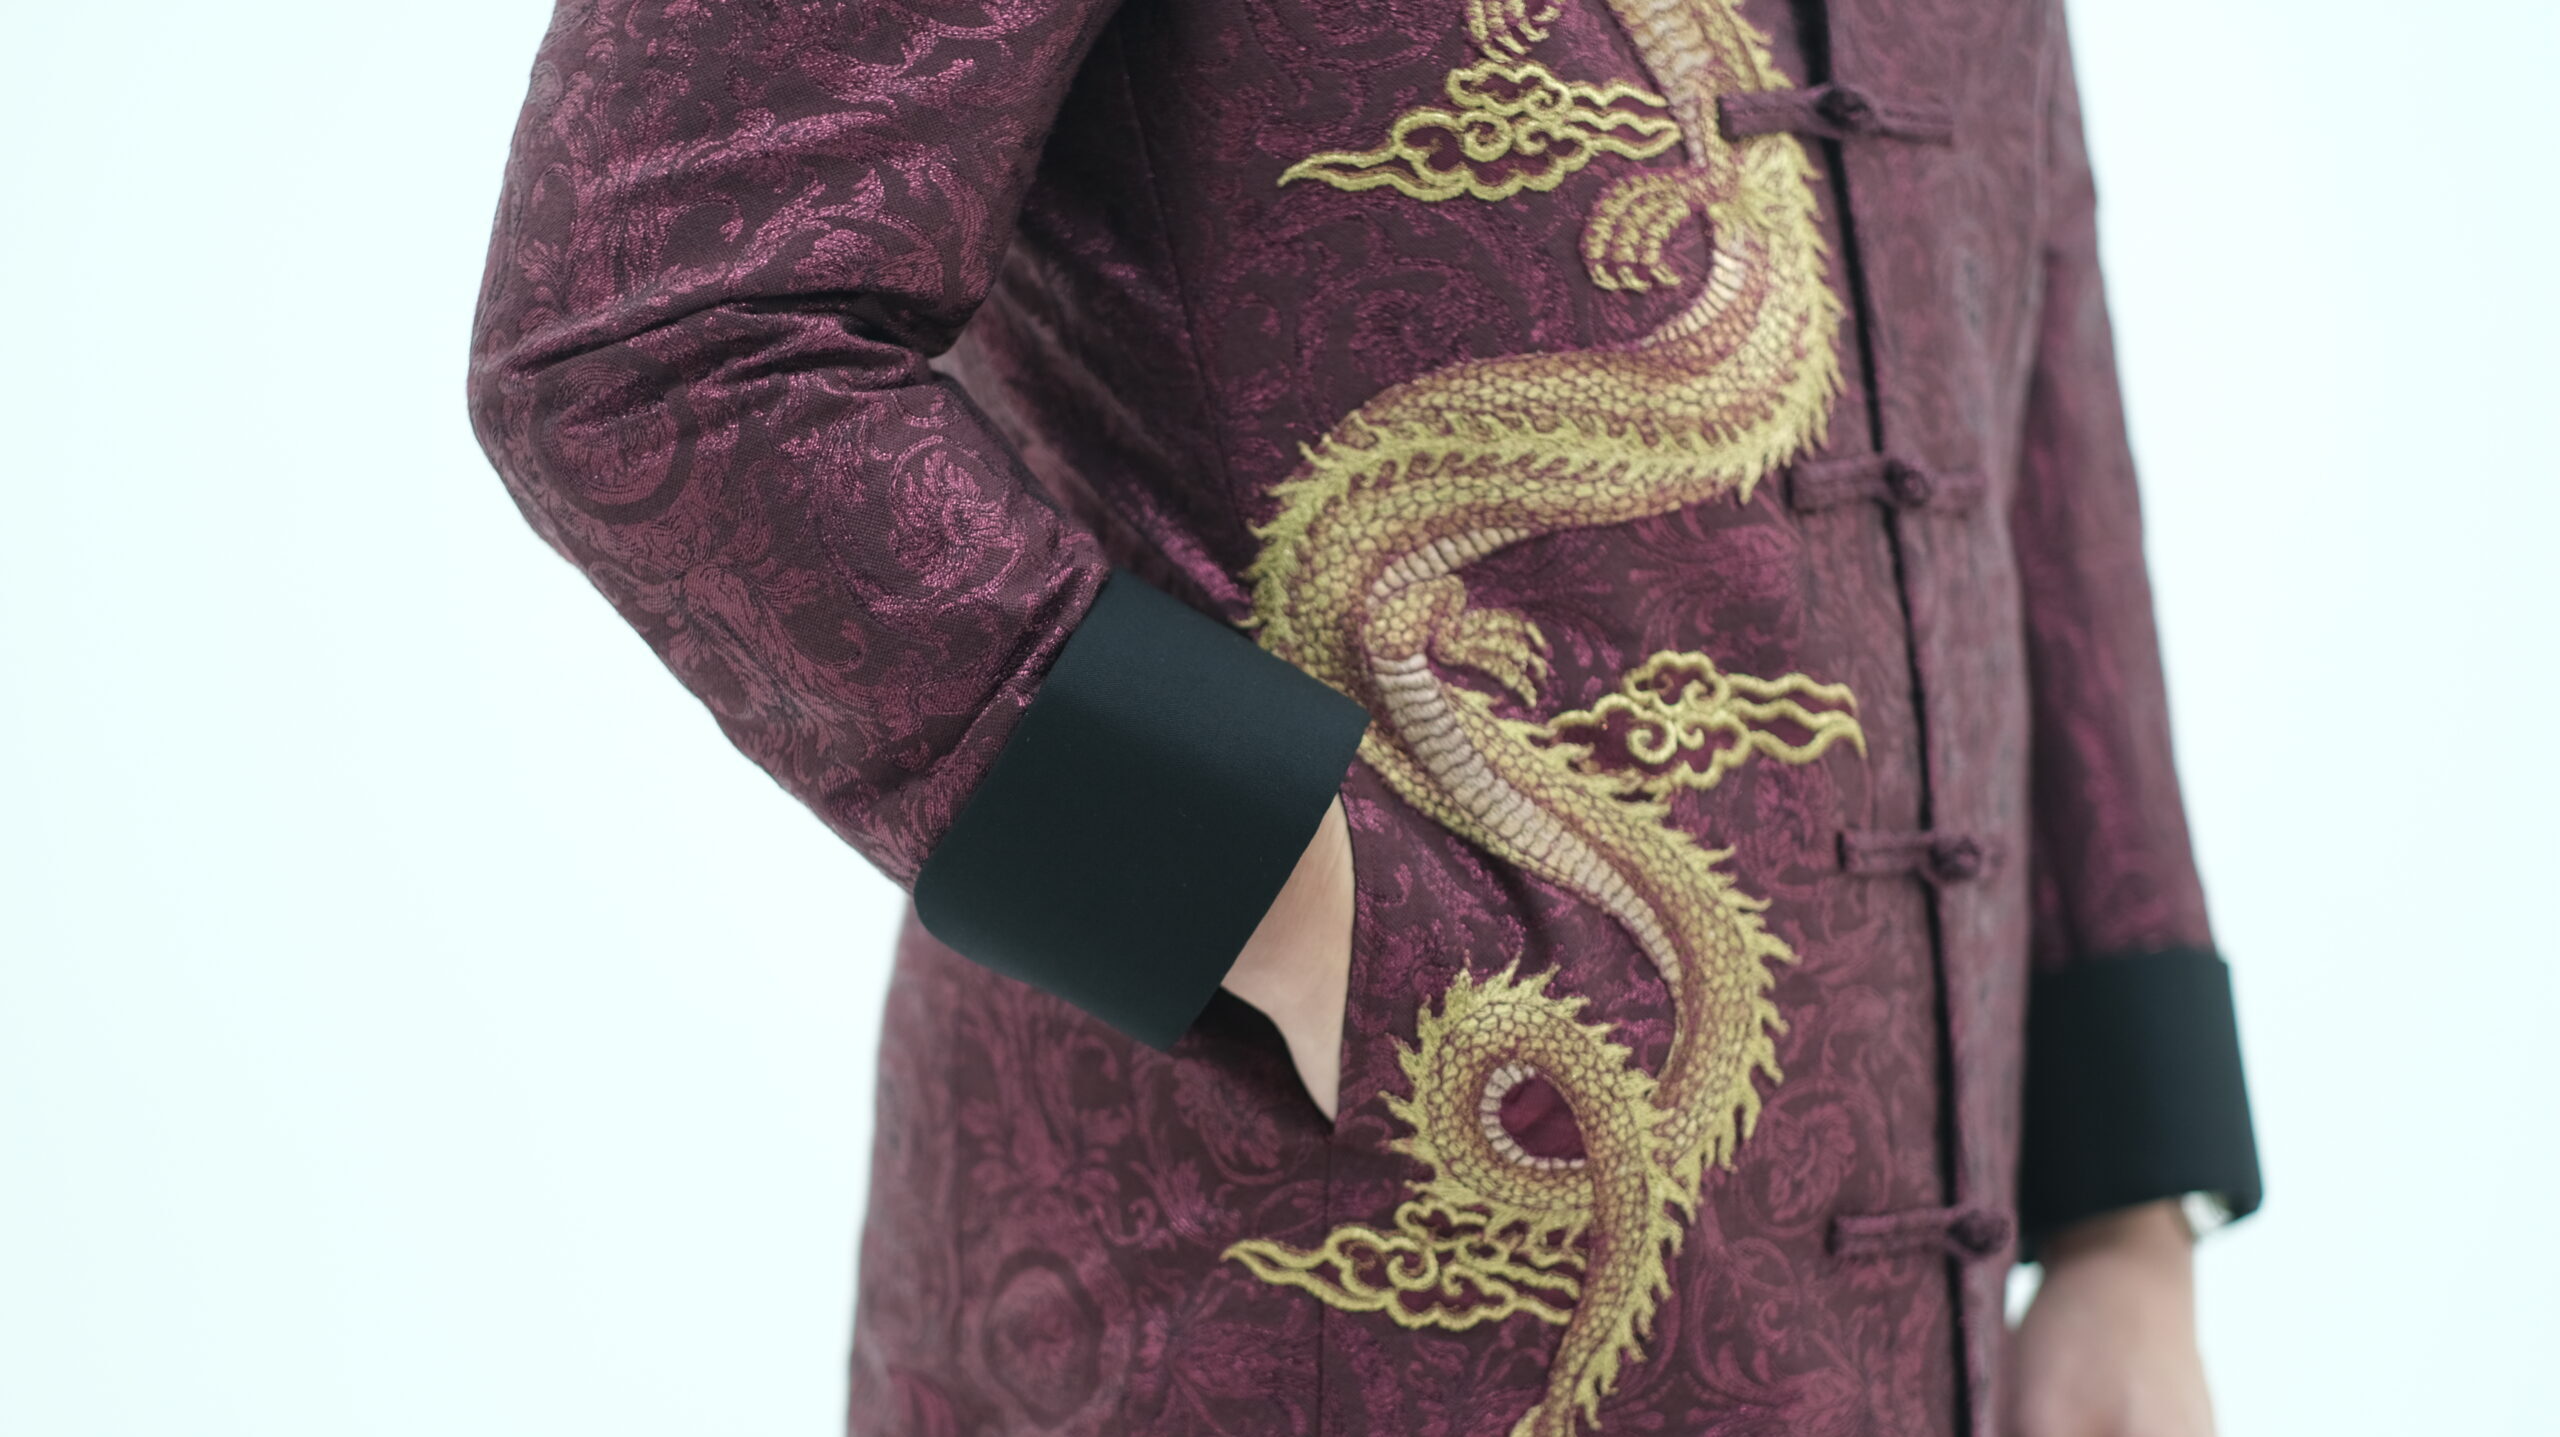 Baju changsan adalah salah satu baju tradisional tiongkok yang elegan